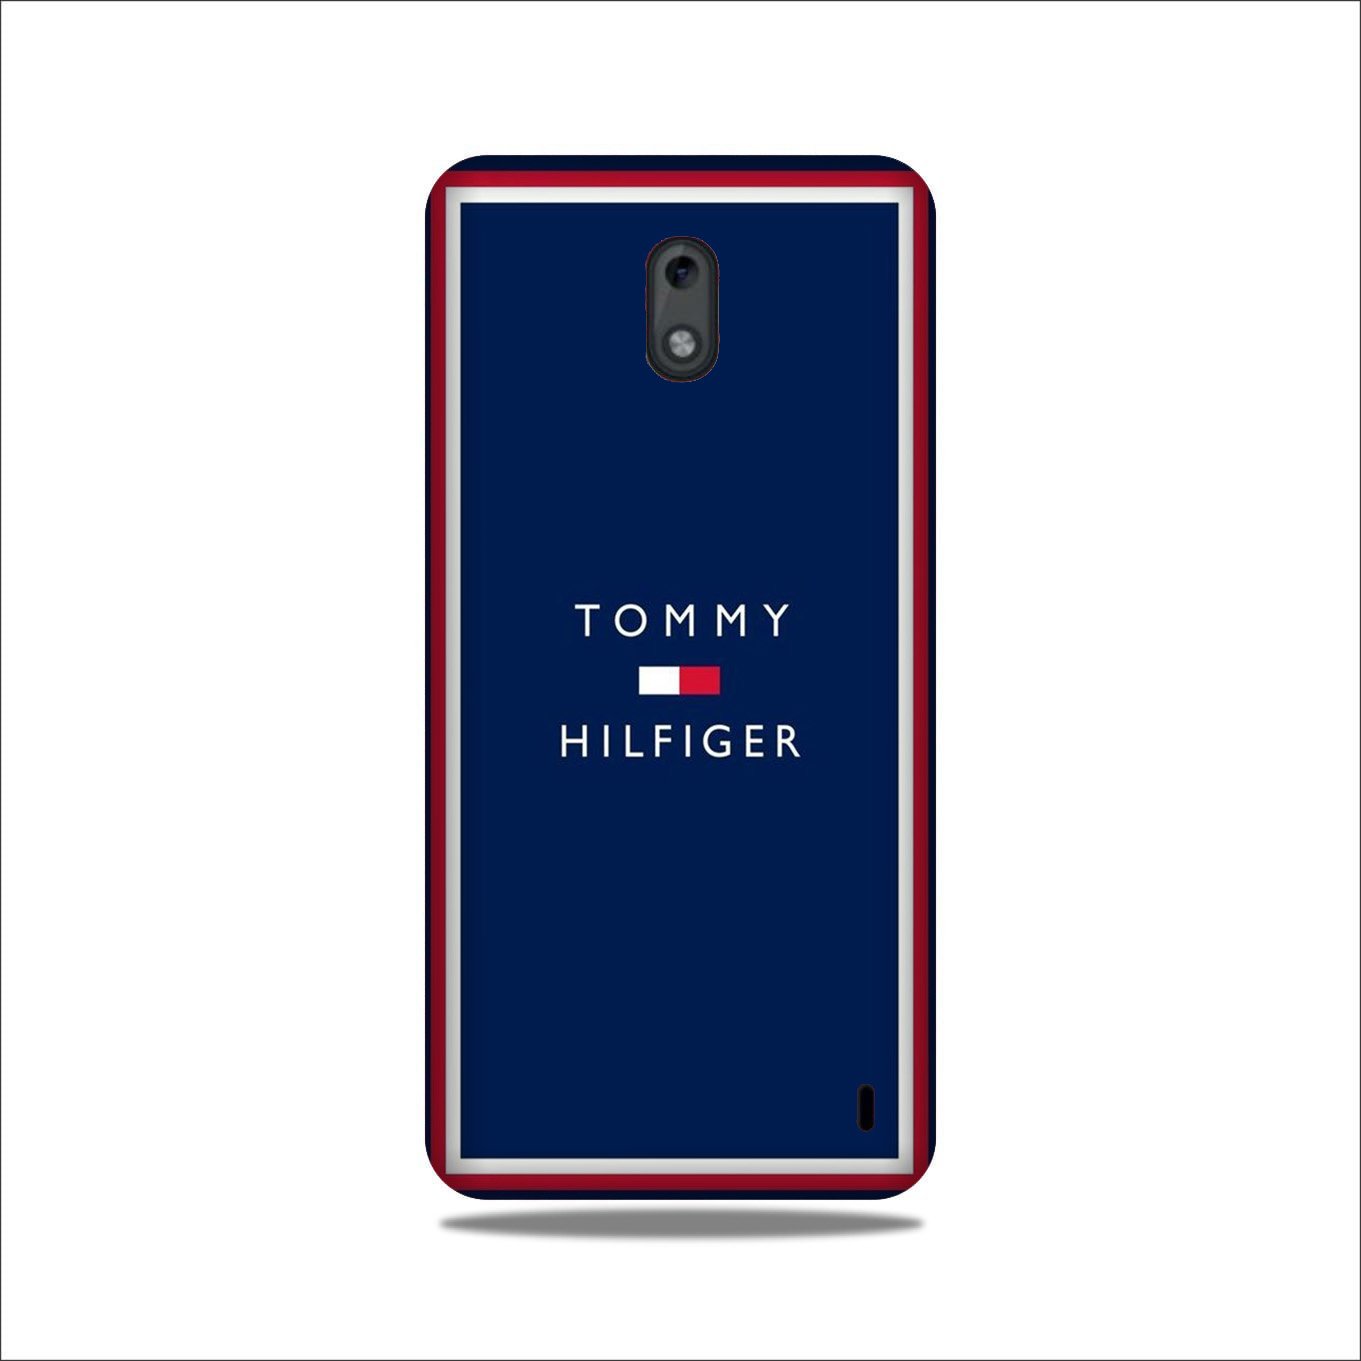 Tommy Hilfiger Case for Nokia 2.2 (Design No. 275)